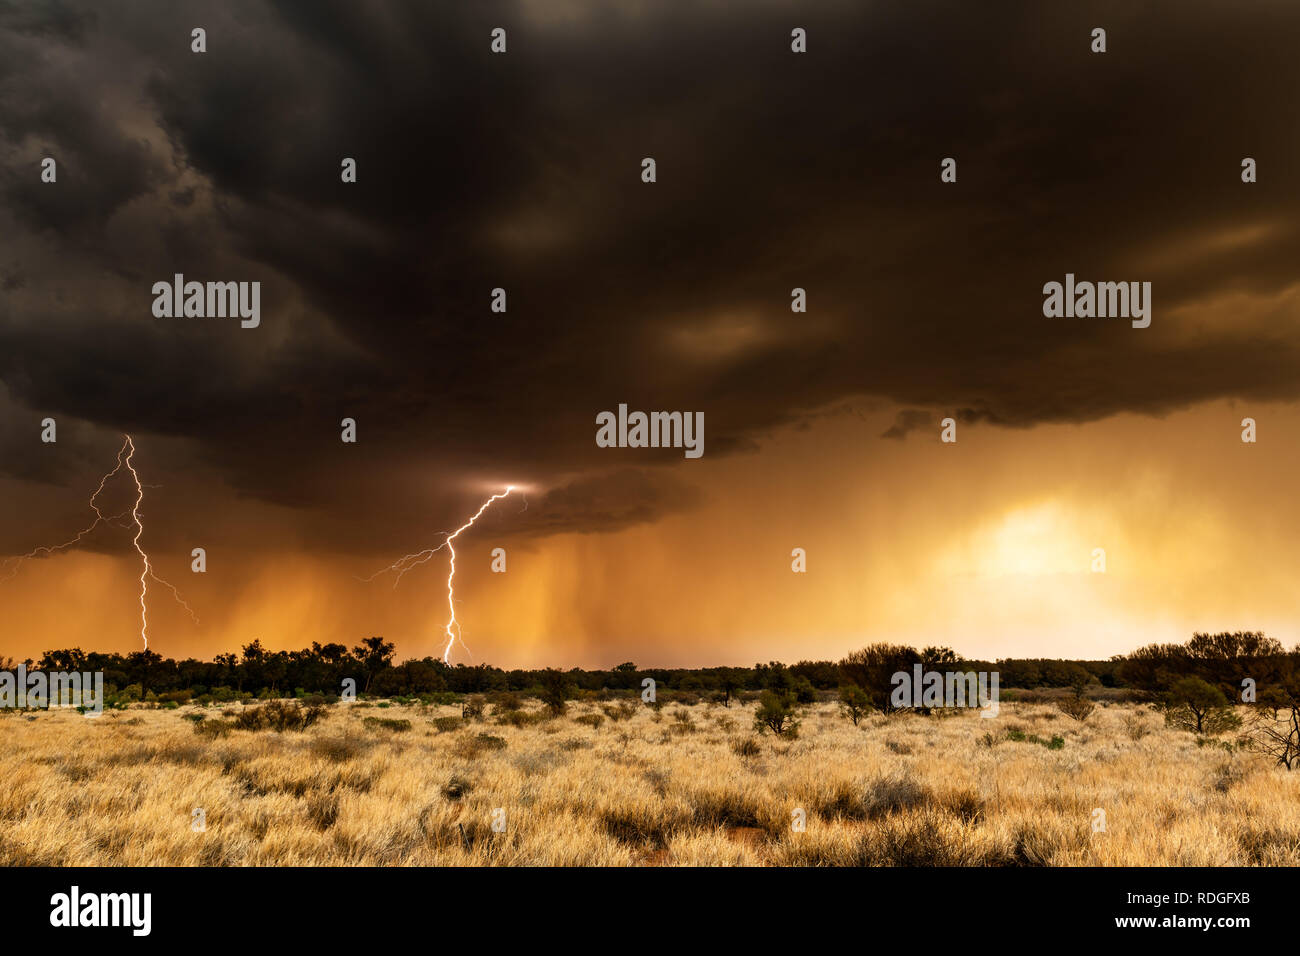 Thunderstorm and lightning in the australian desert. Stock Photo